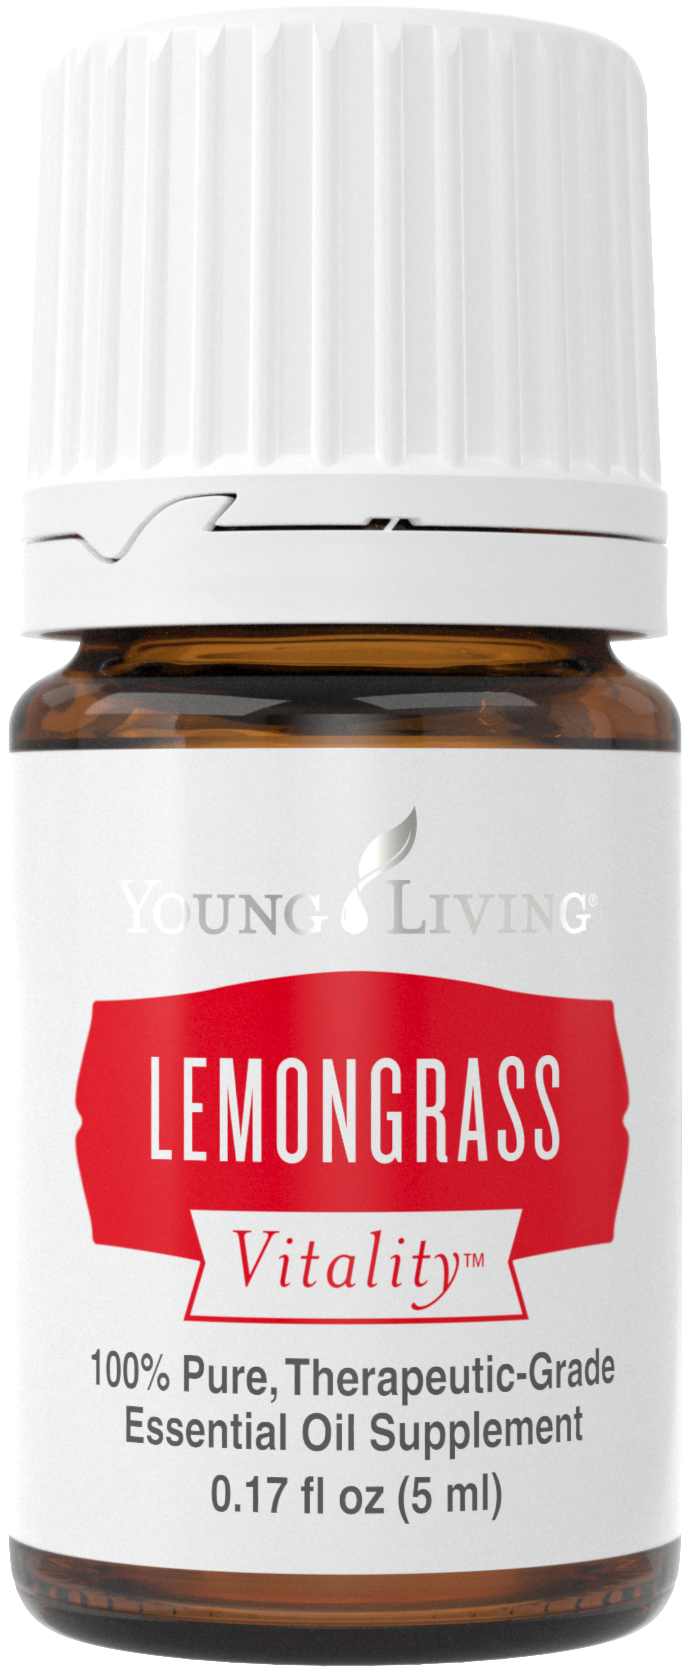 Lemongrass Vitality Silo.png